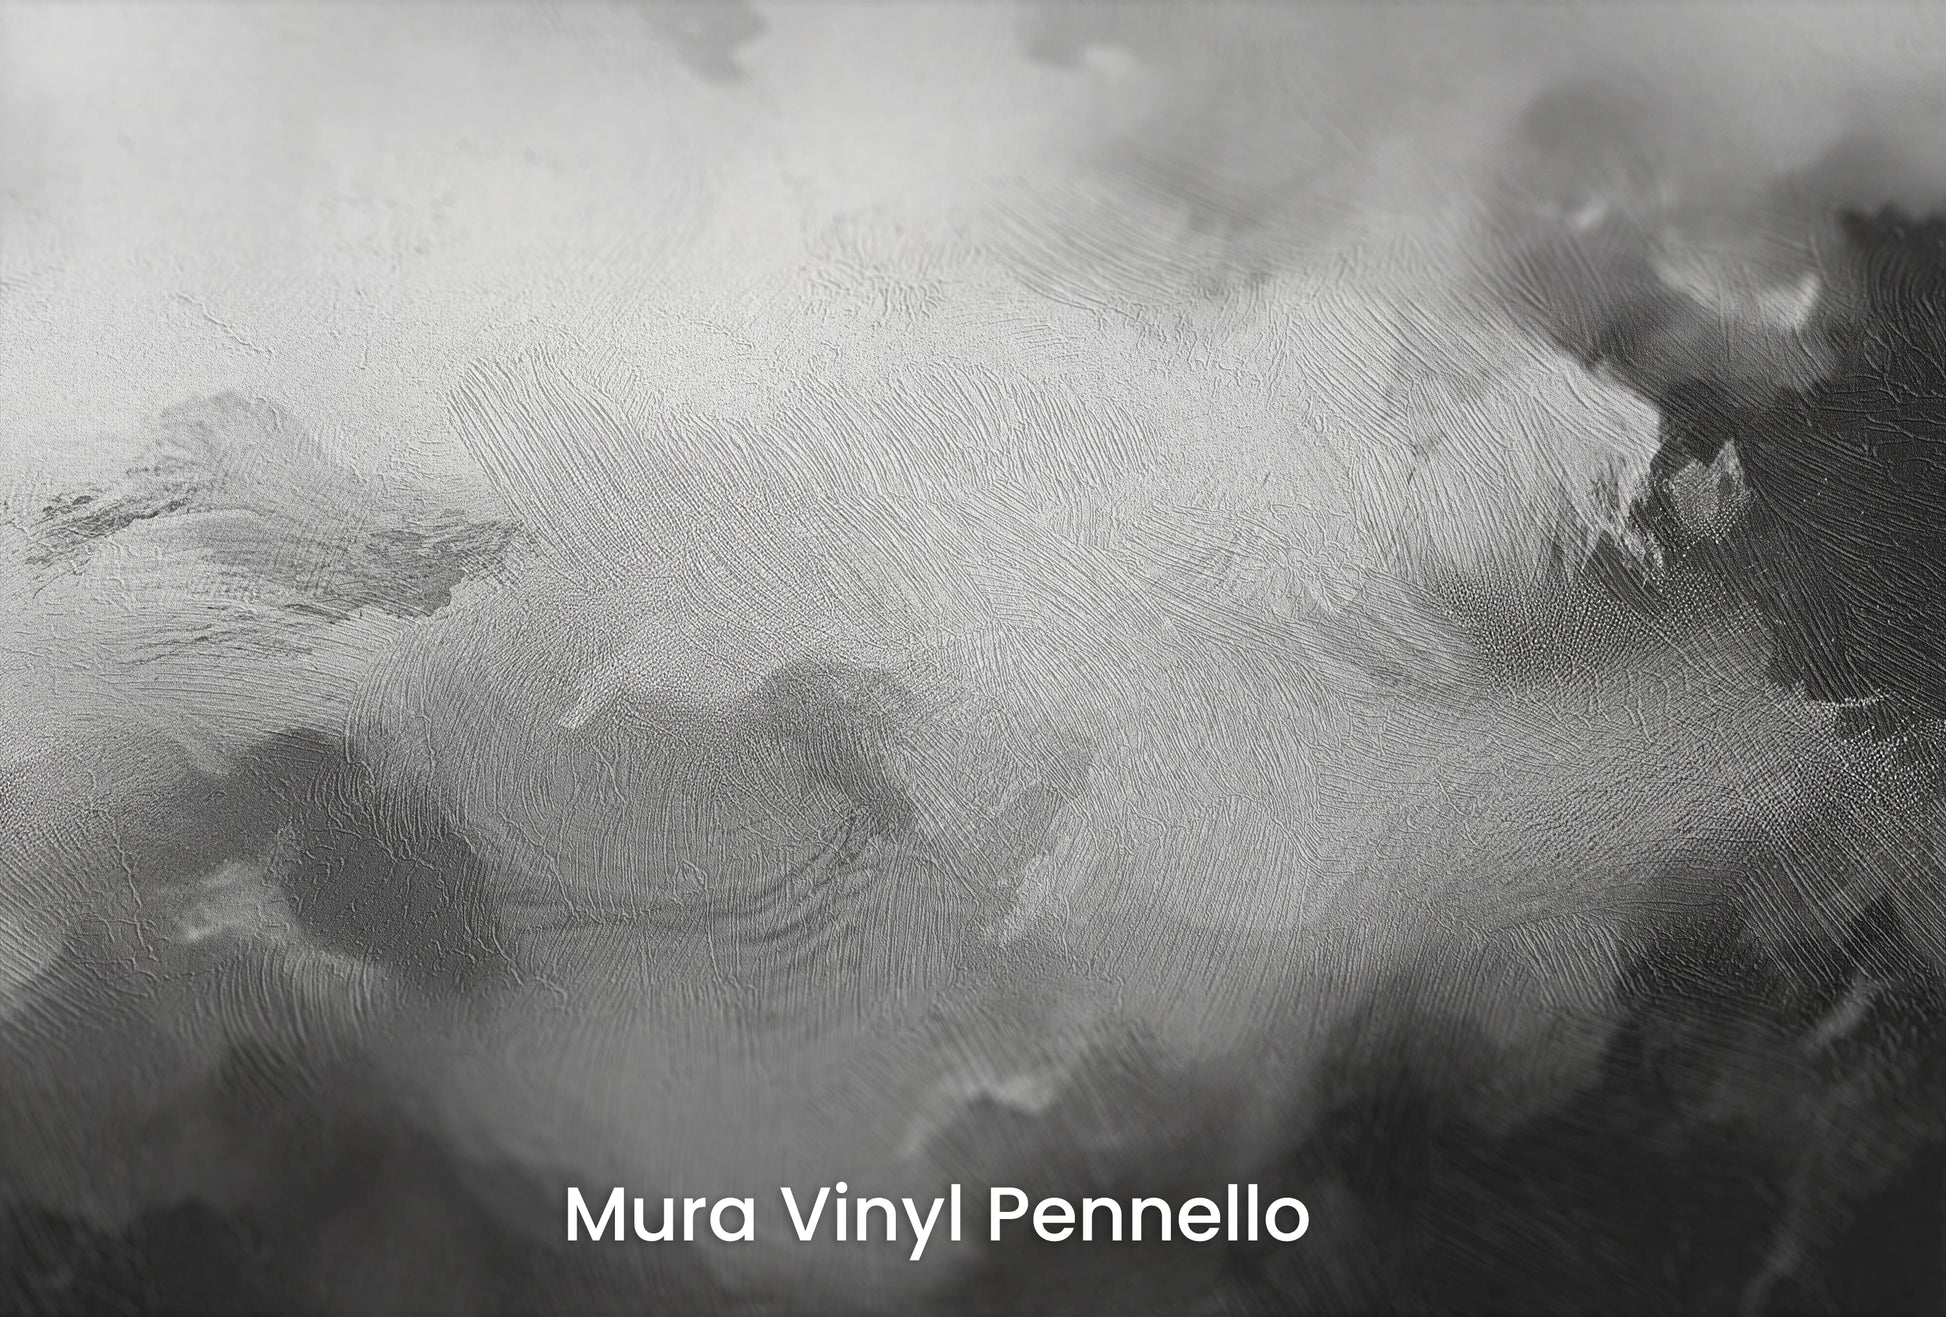 Zbliżenie na artystyczną fototapetę o nazwie Storm's Palette na podłożu Mura Vinyl Pennello - faktura pociągnięć pędzla malarskiego.